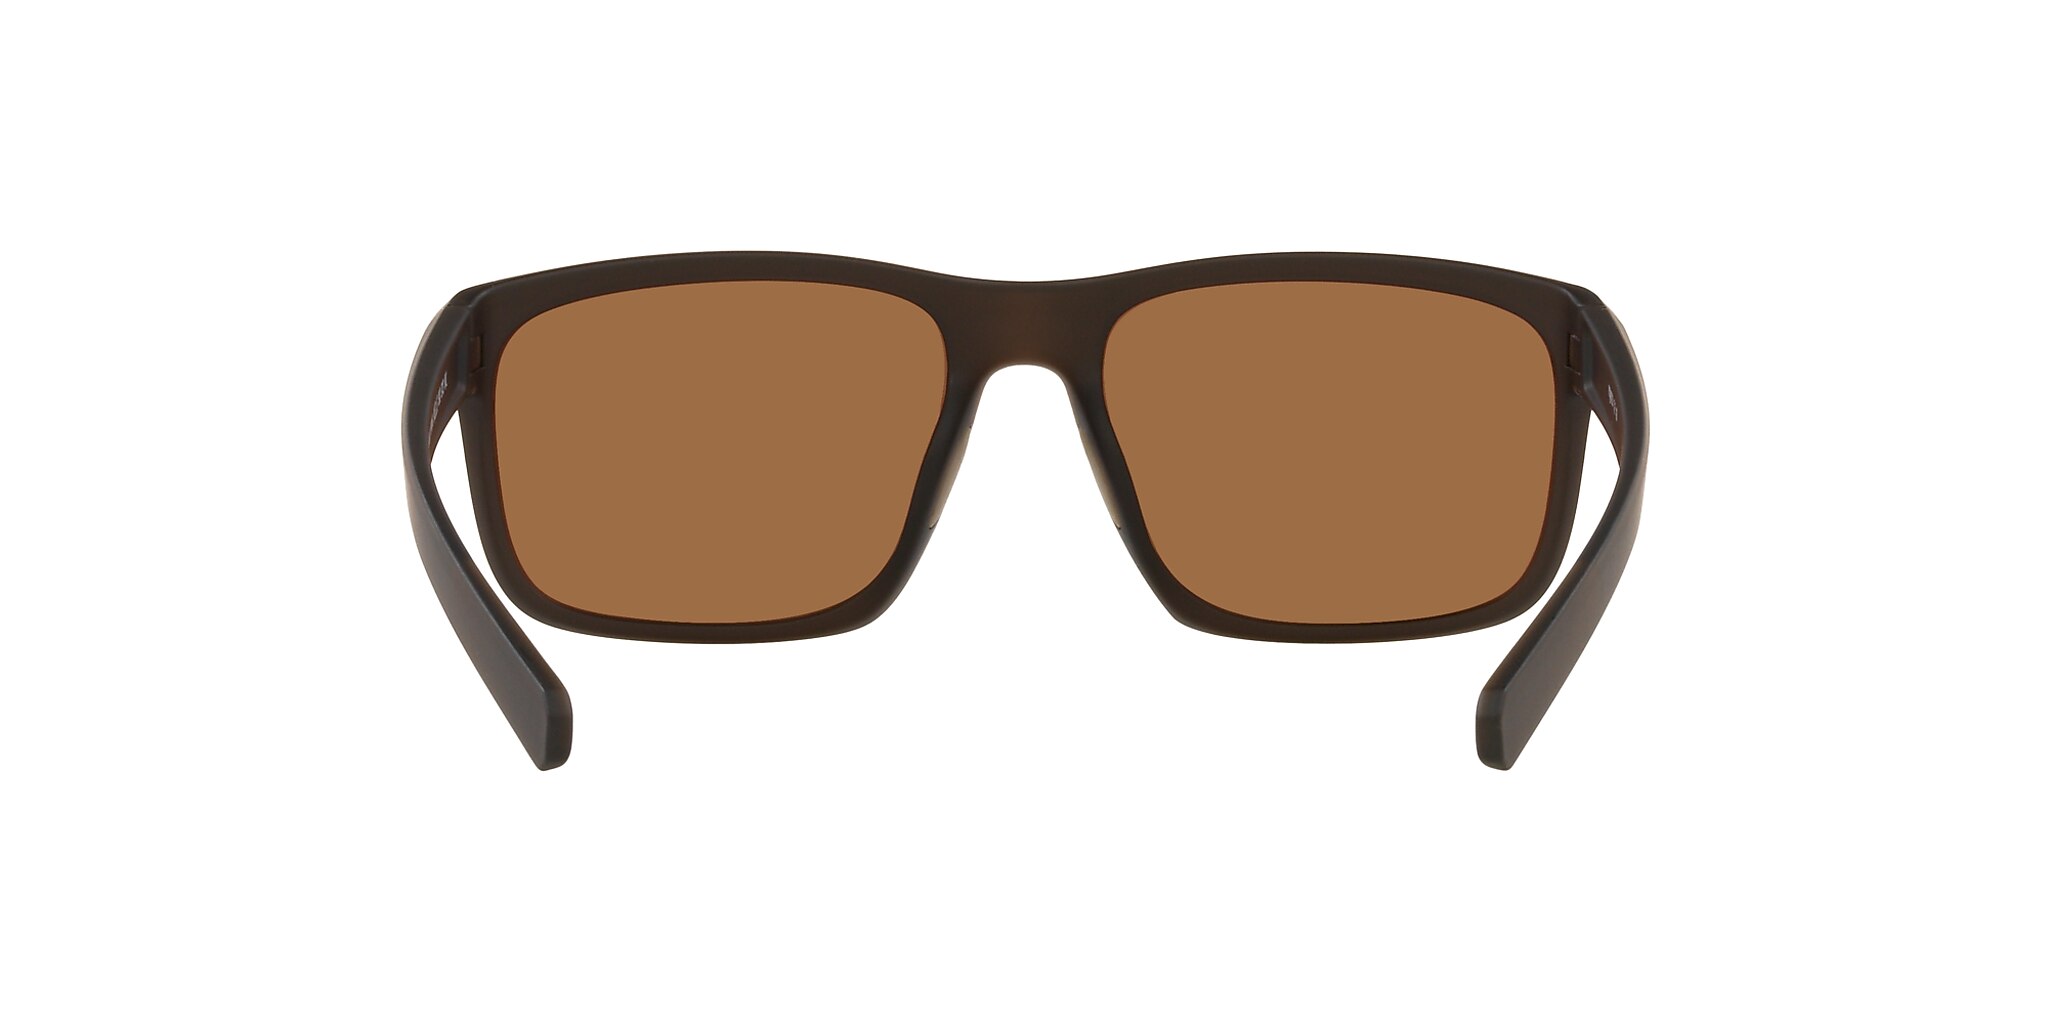 Wells Sunglasses in Brown | Native Eyewear®